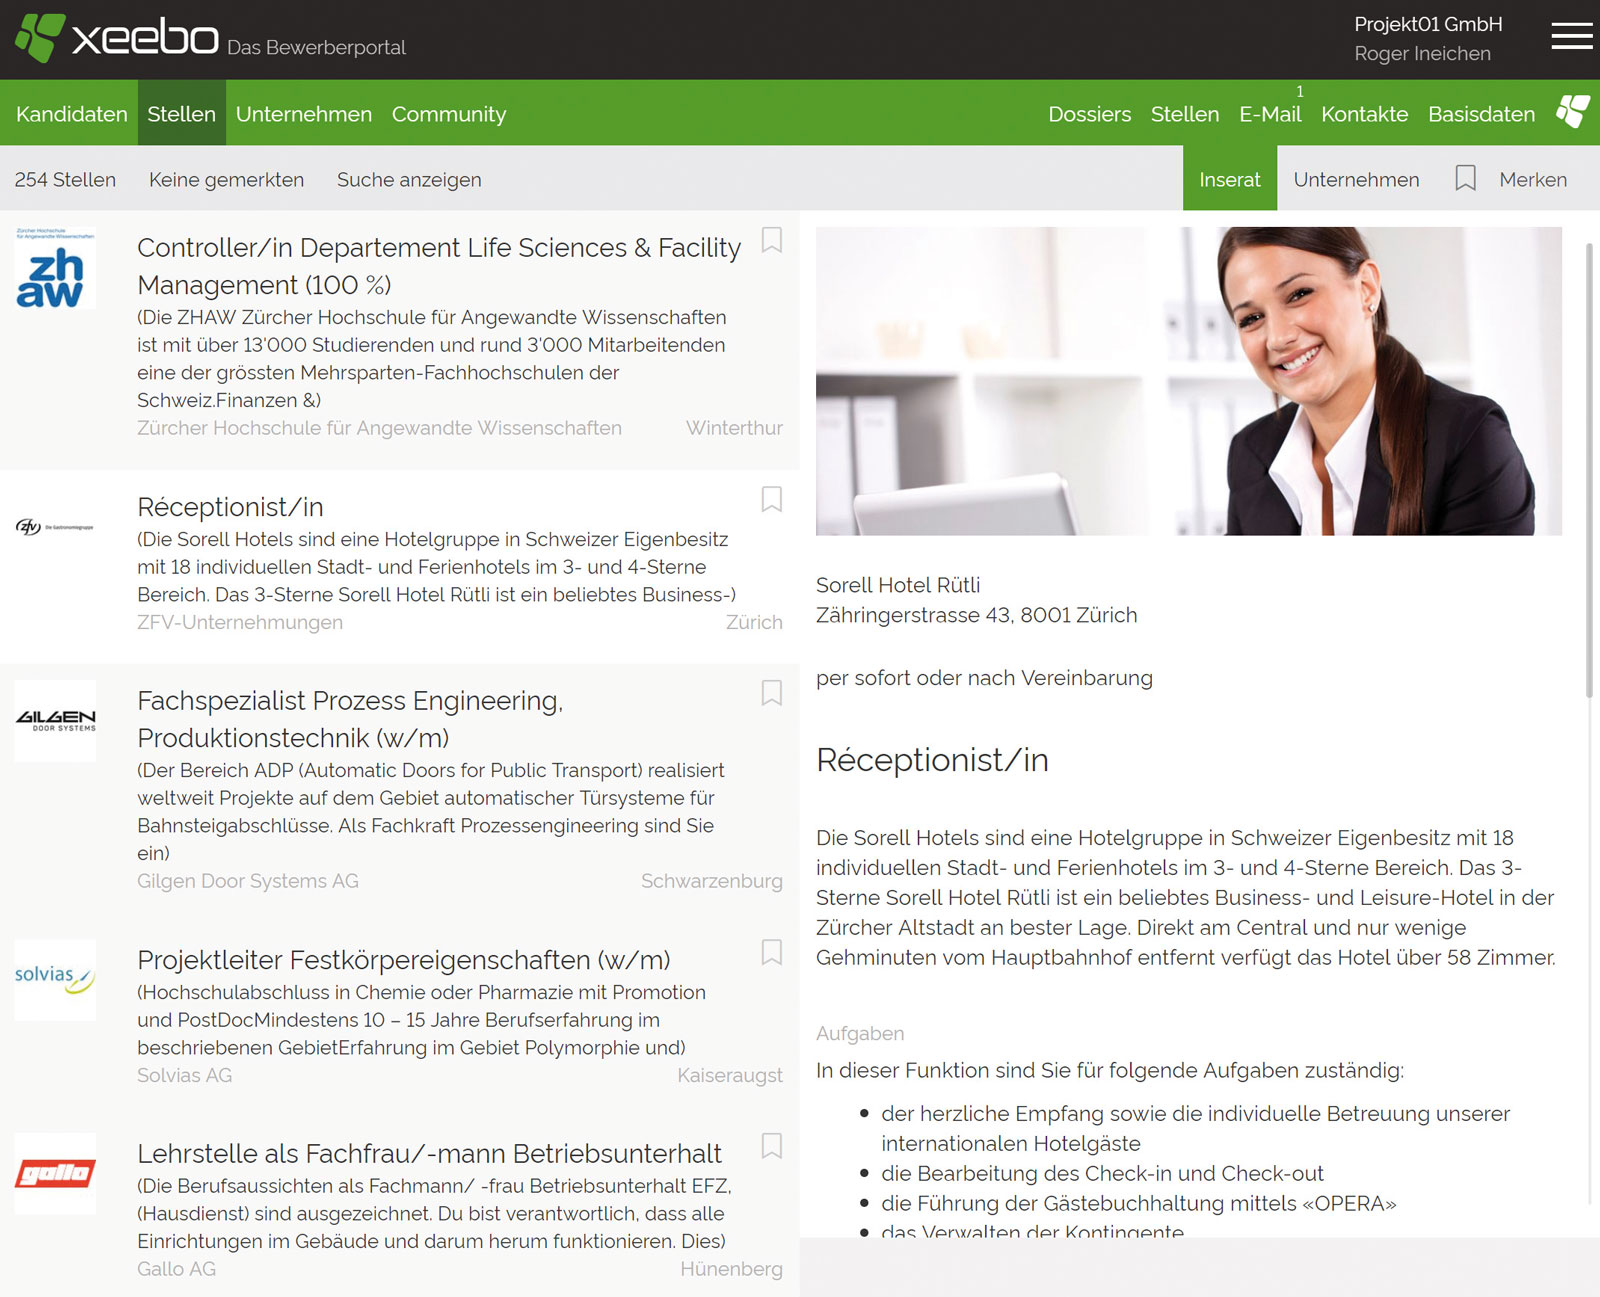 Xeebo vernetzt Unternehmen und Fachkräfte